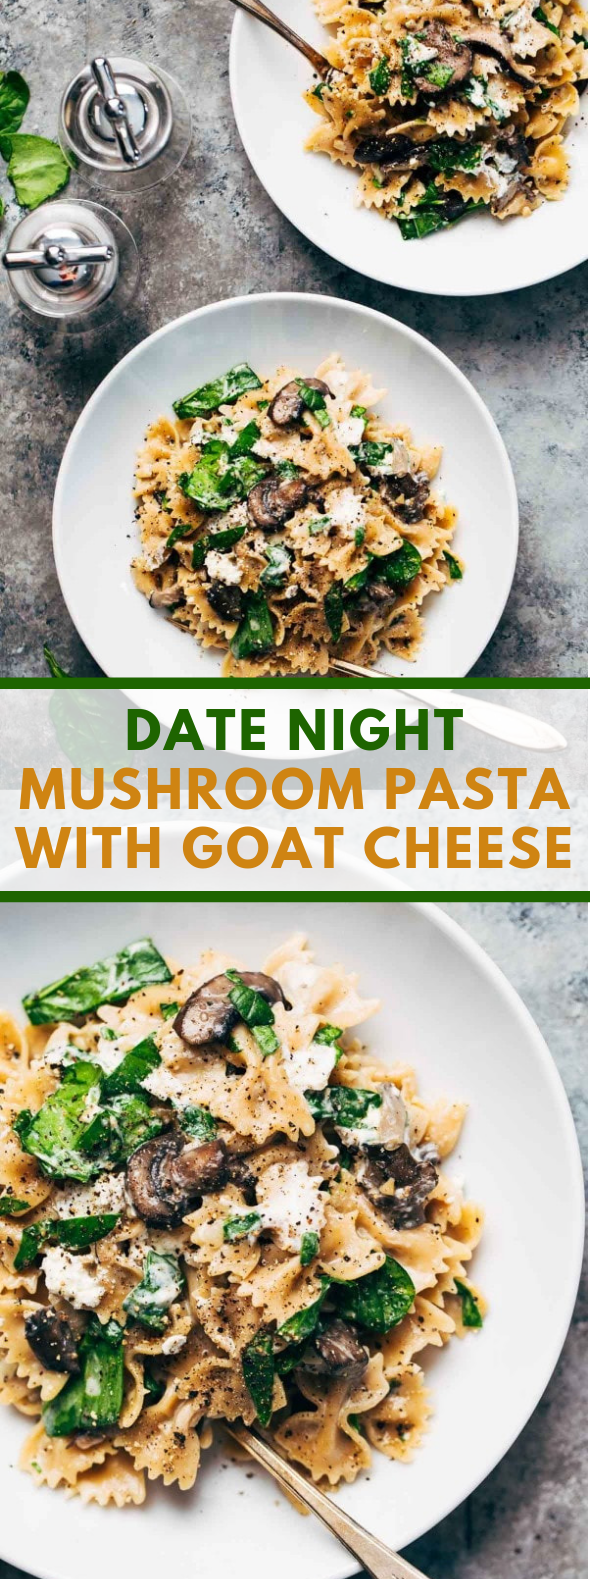 Date Night Mushroom Pasta with Goat Cheese #vegetarian #recipe